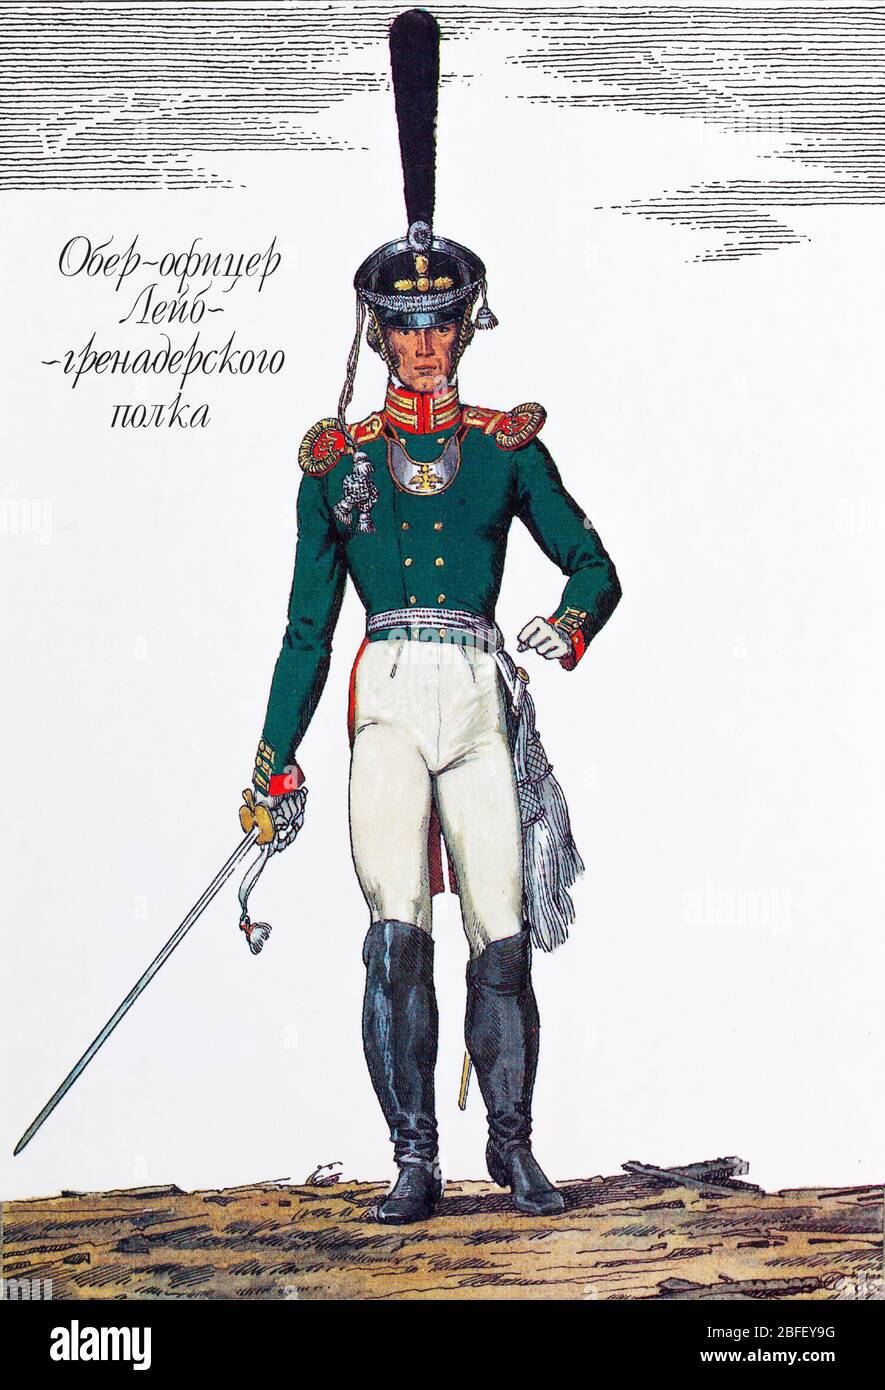 Officier d'entreprise du Leib grenadier Regiment, 1812, uniforme de l'armée russe du XIXe siècle, Russie Banque D'Images